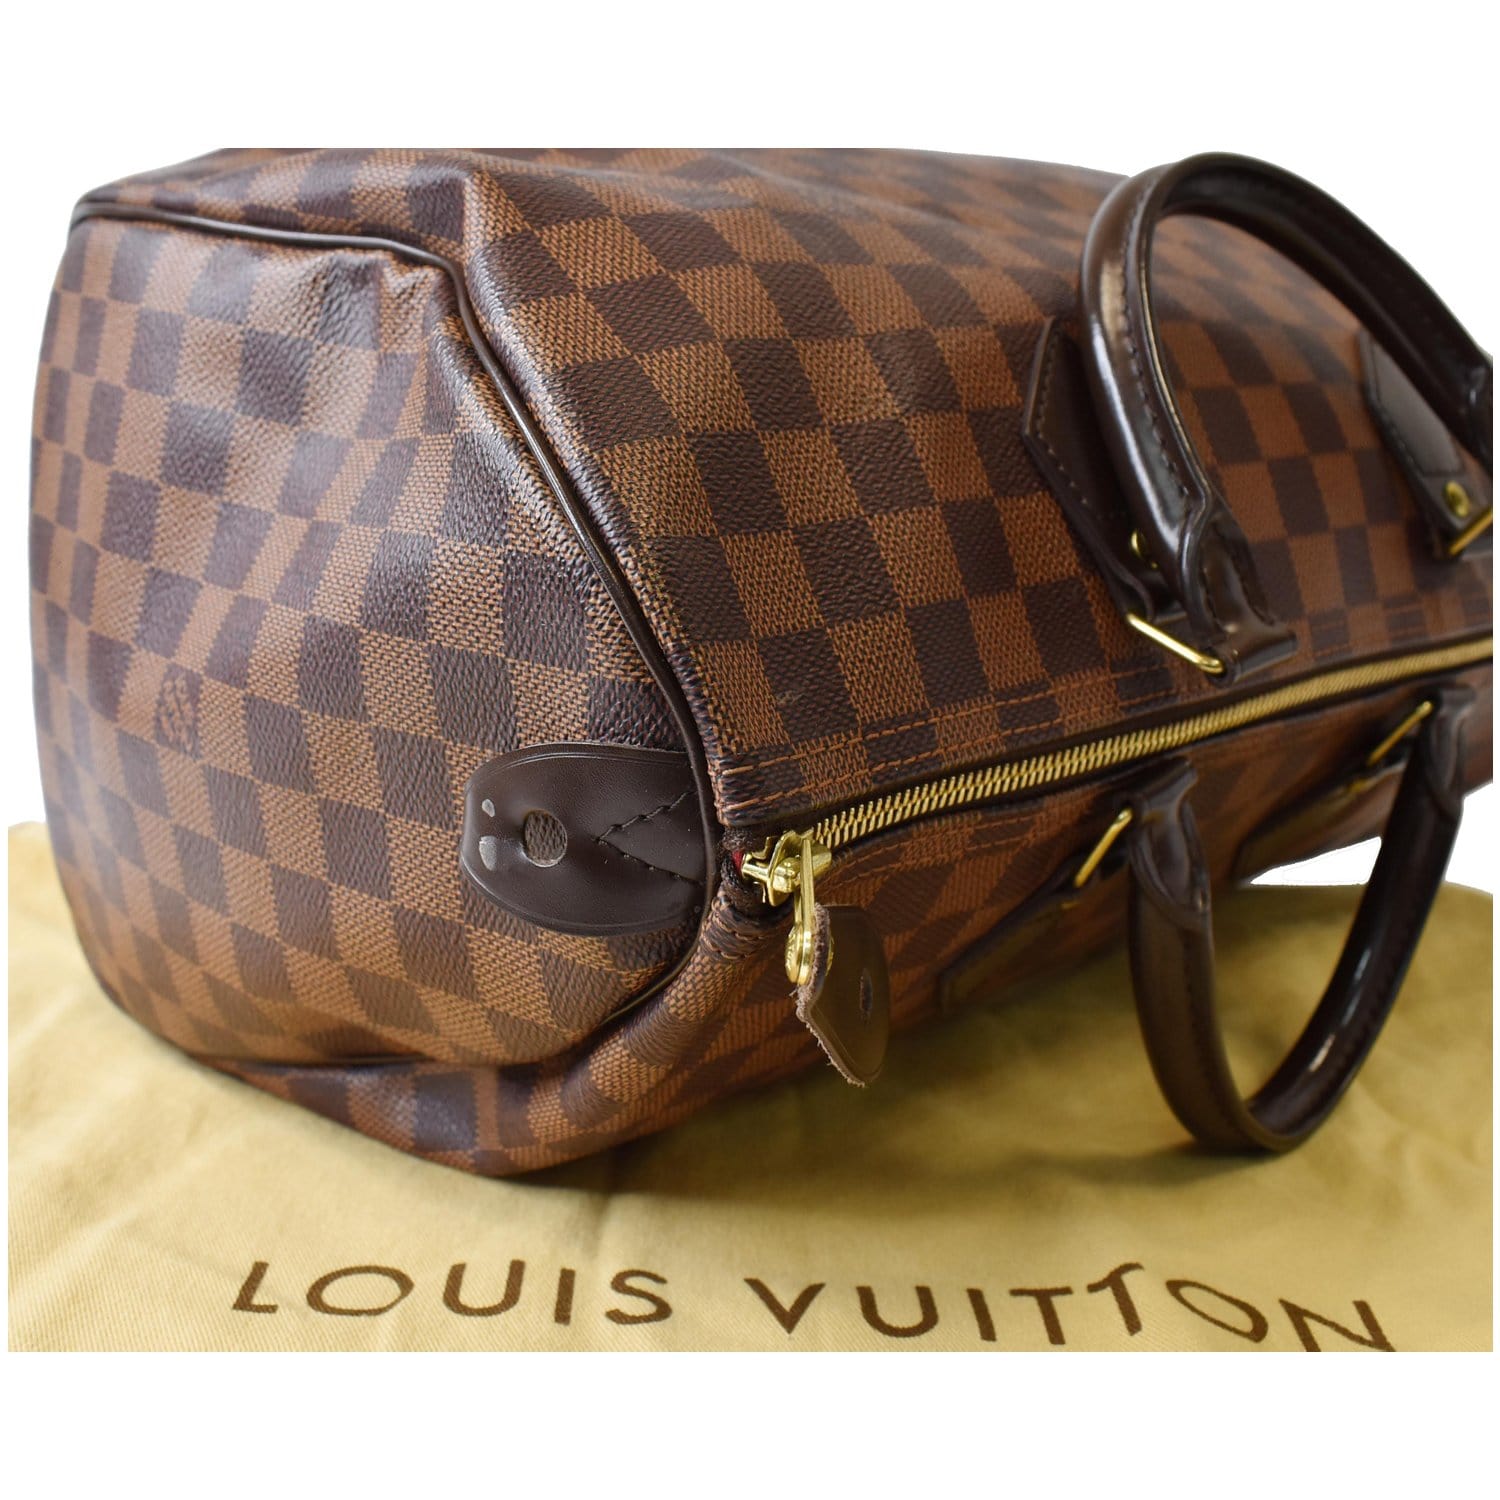 Louis Vuitton Speedy 35 Damier Ebene Satchel Bag Brown